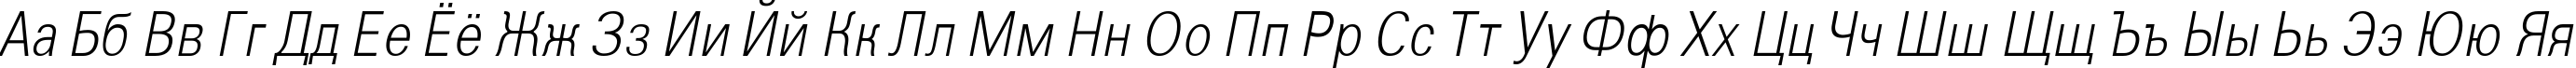 Пример написания русского алфавита шрифтом a_GroticLtNr Italic